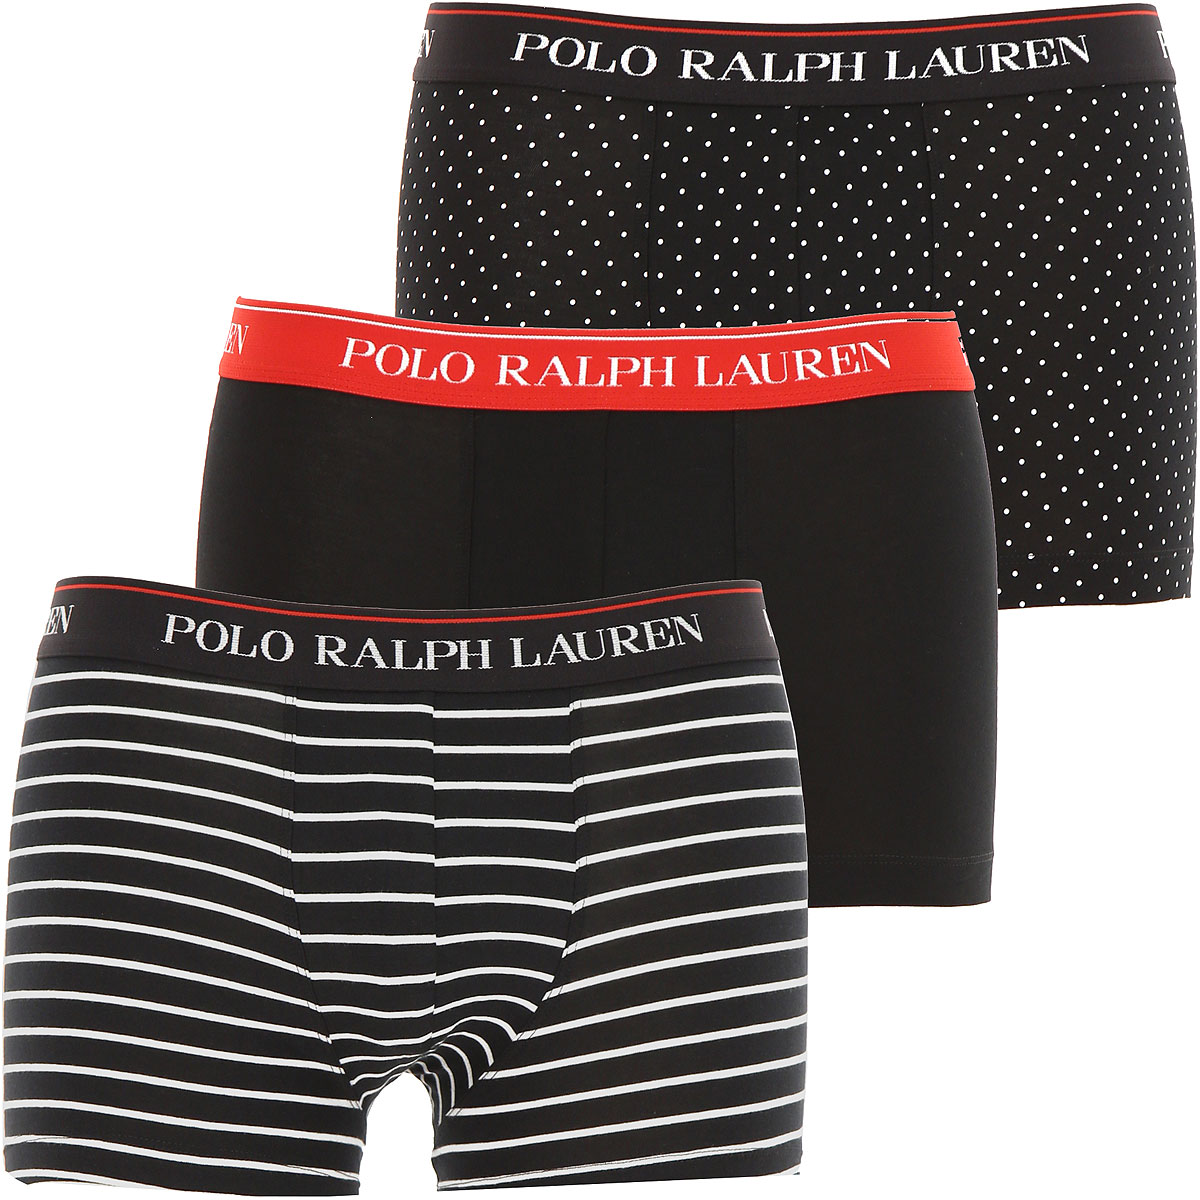 Ralph Lauren Boxer Shorts für Herren, Unterhose, Short, Boxer Günstig im Sale, 3 Pack, Schwarz, Baumwolle, 2017, M S XL